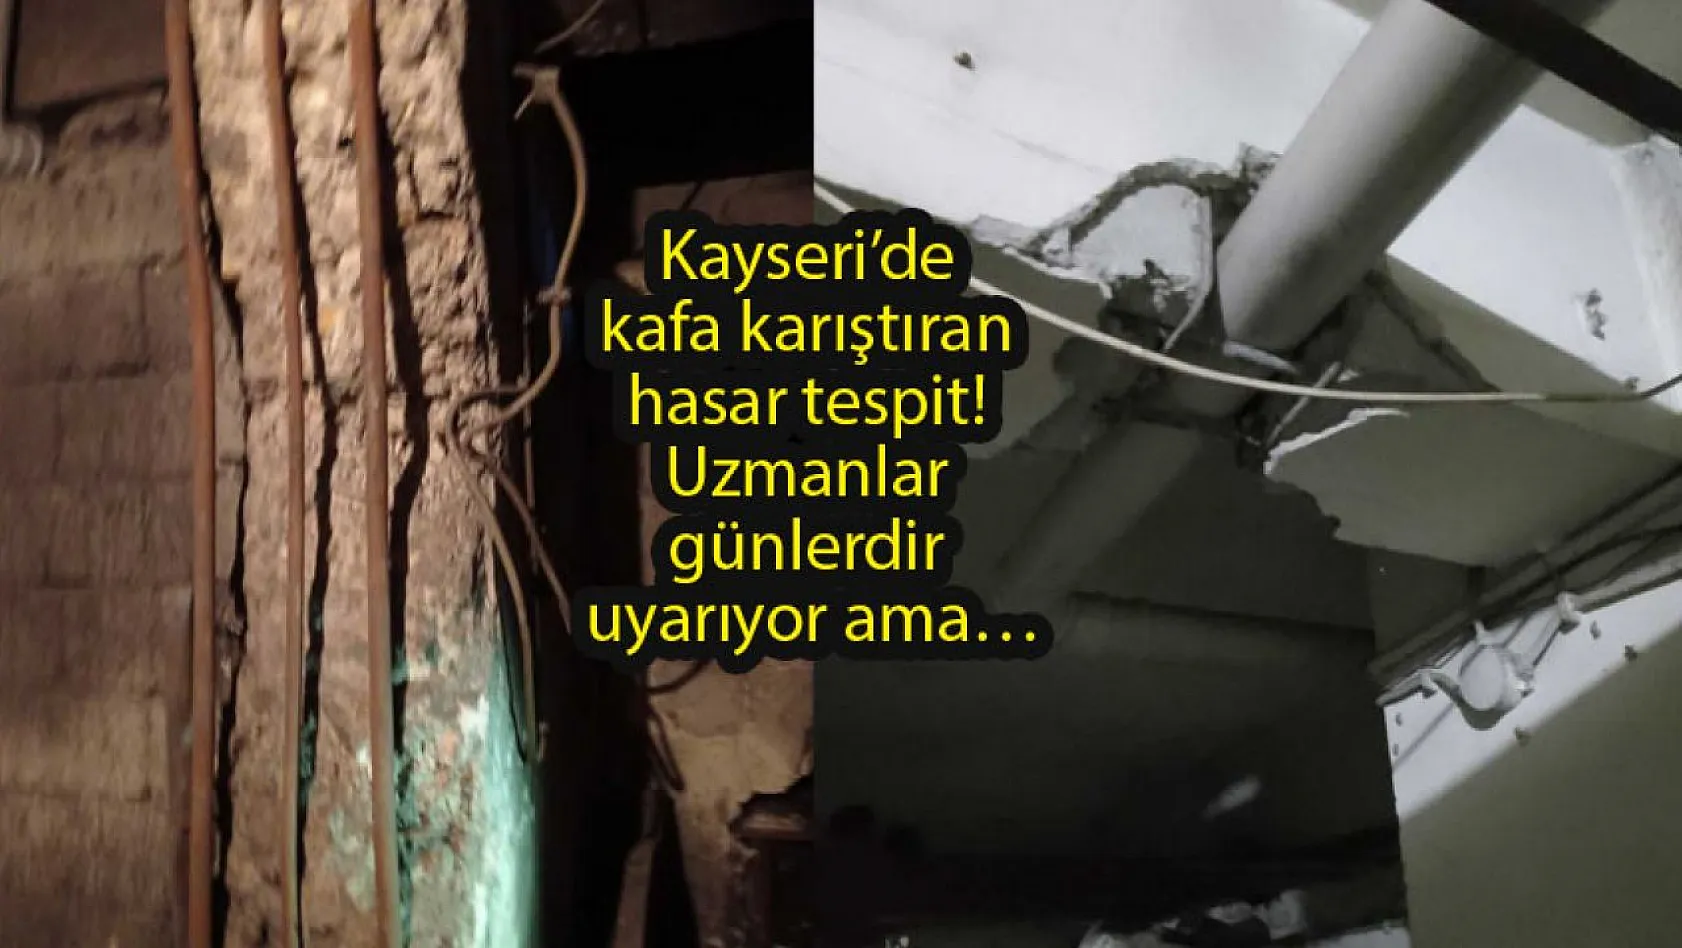 Bu görüntülerin yer aldığı binalara Kayseri'de 'Sağlam' raporu verdiler!